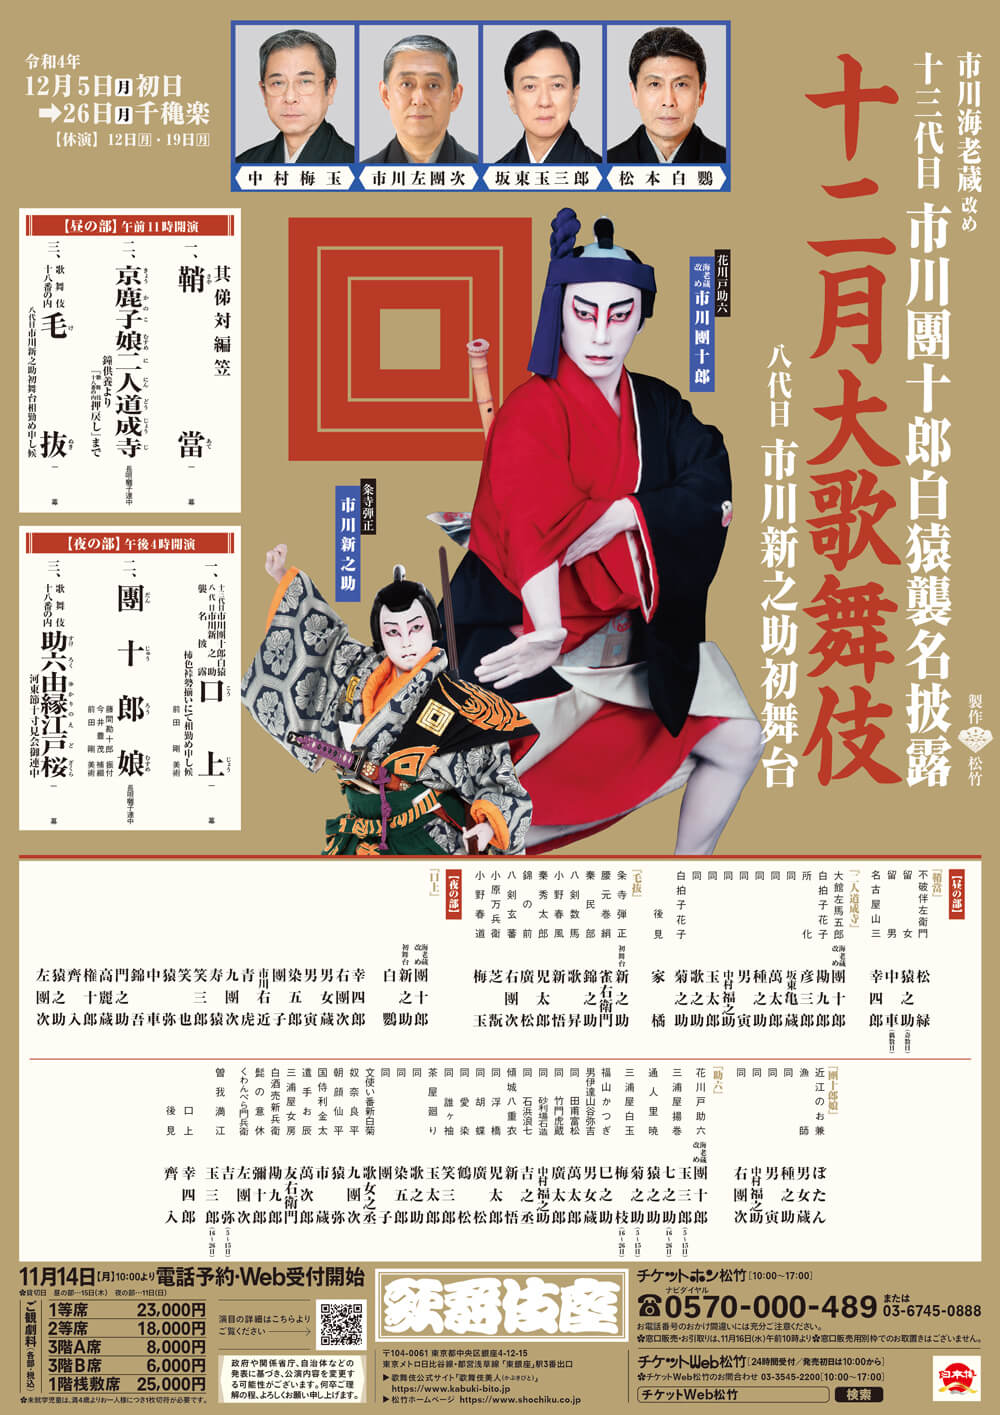 十二月大歌舞伎 昼の部『鞘當』『京鹿子娘二人道成寺』『毛抜』